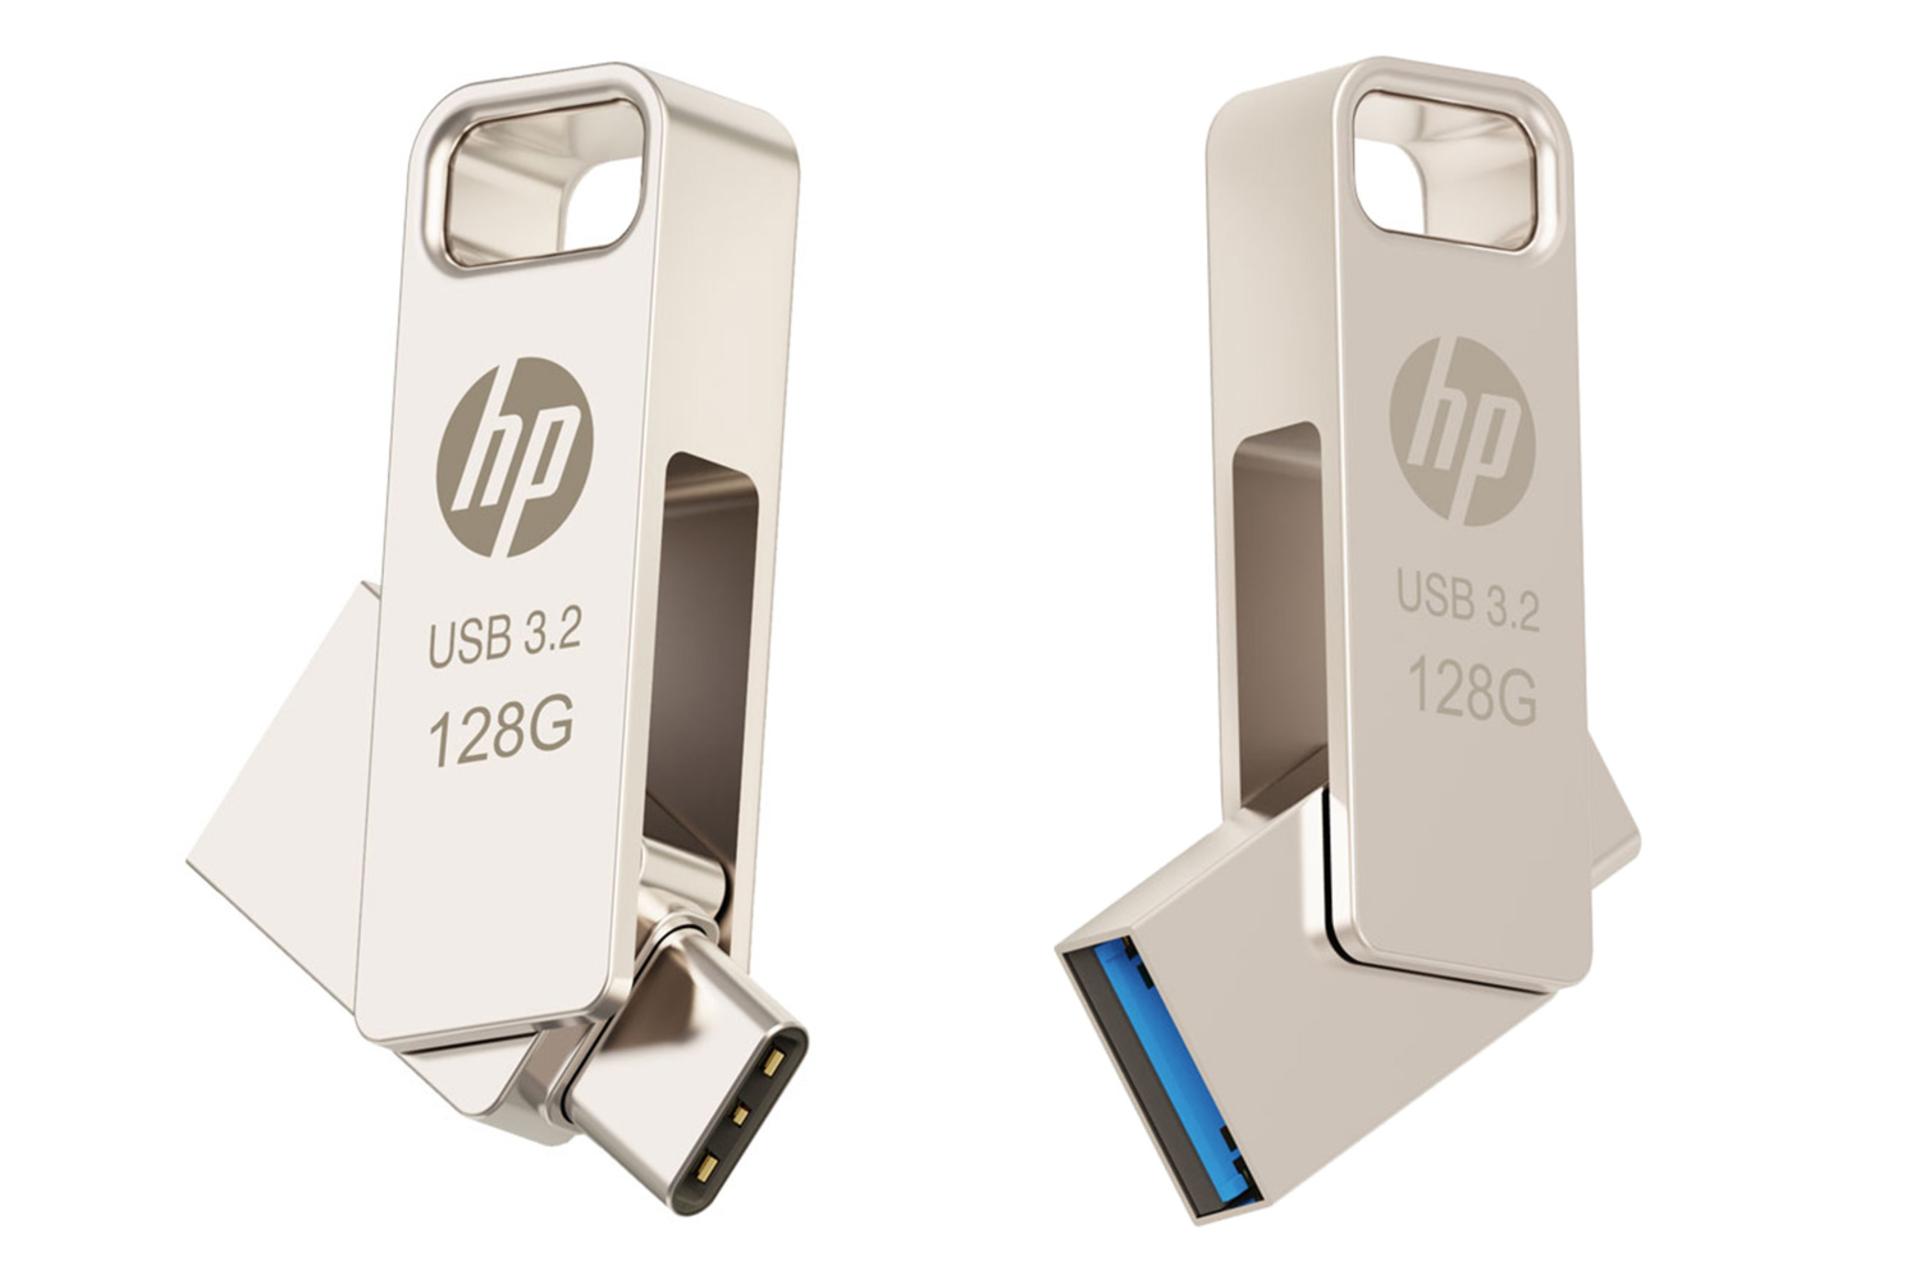 نمای کناری فلش مموری اچ پی HP x206c 128GB USB 3.2